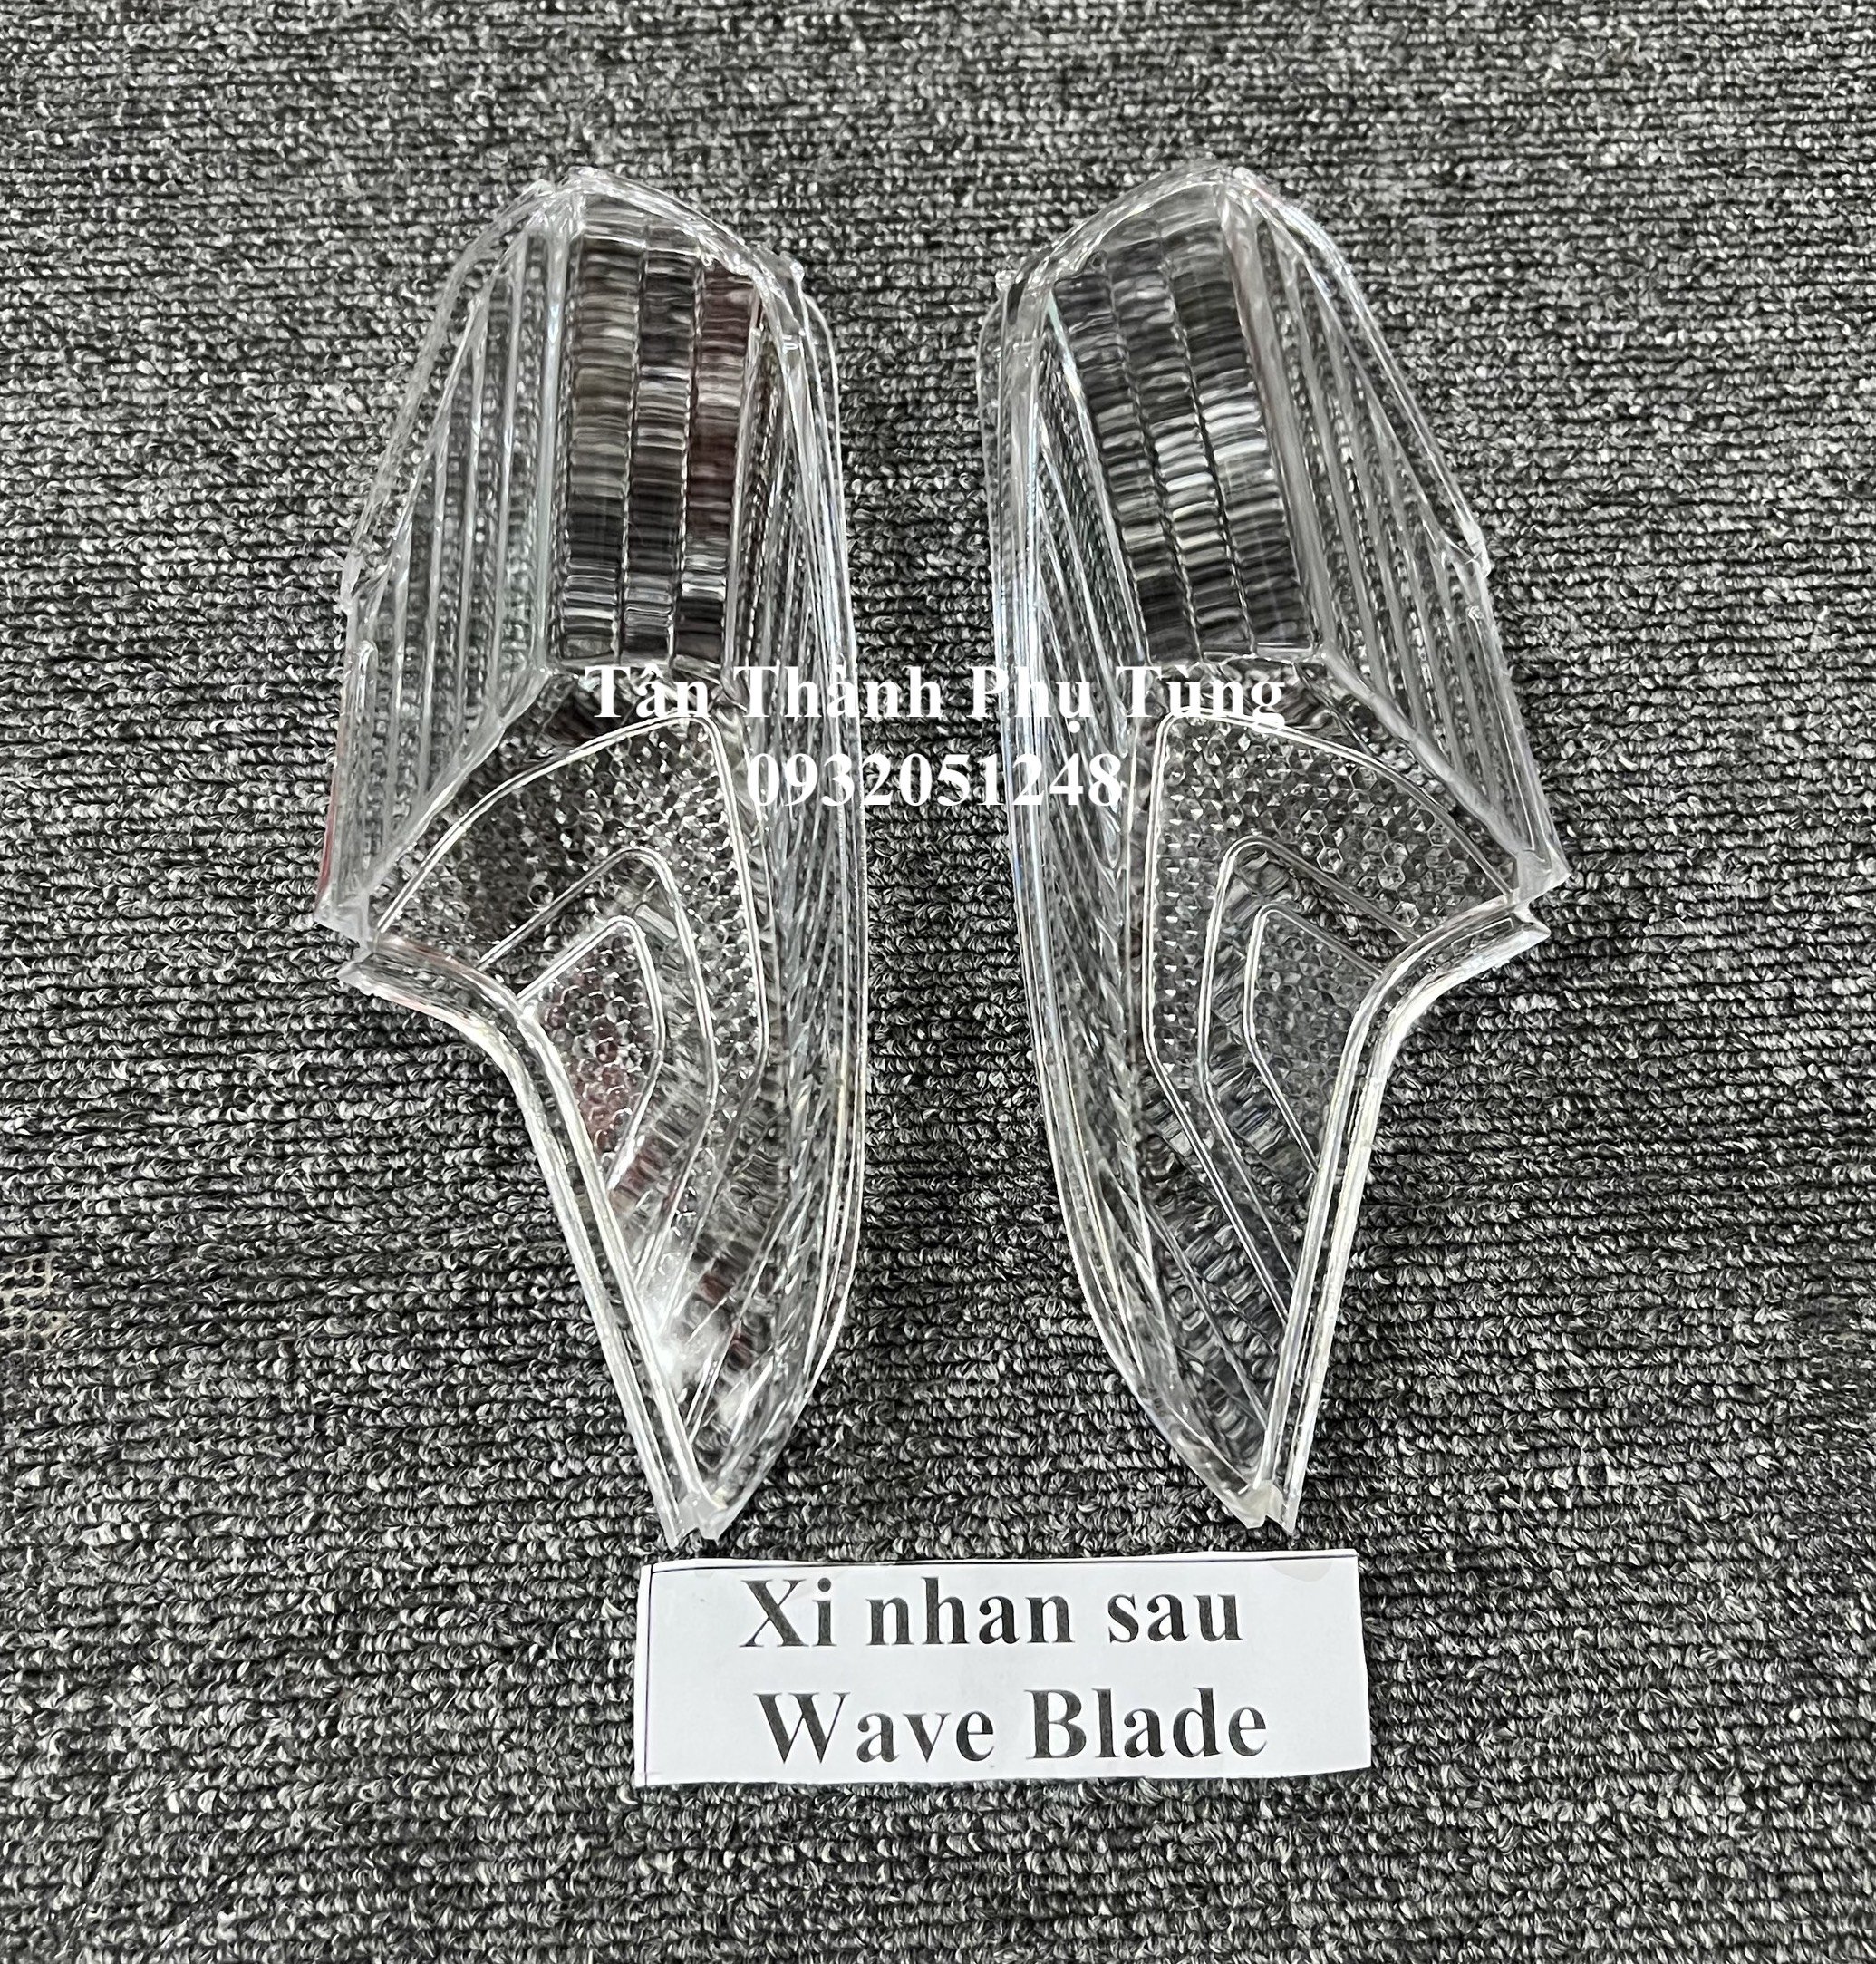 Xi nhan sau dành cho Wave Blade - 1 cặp trái phải